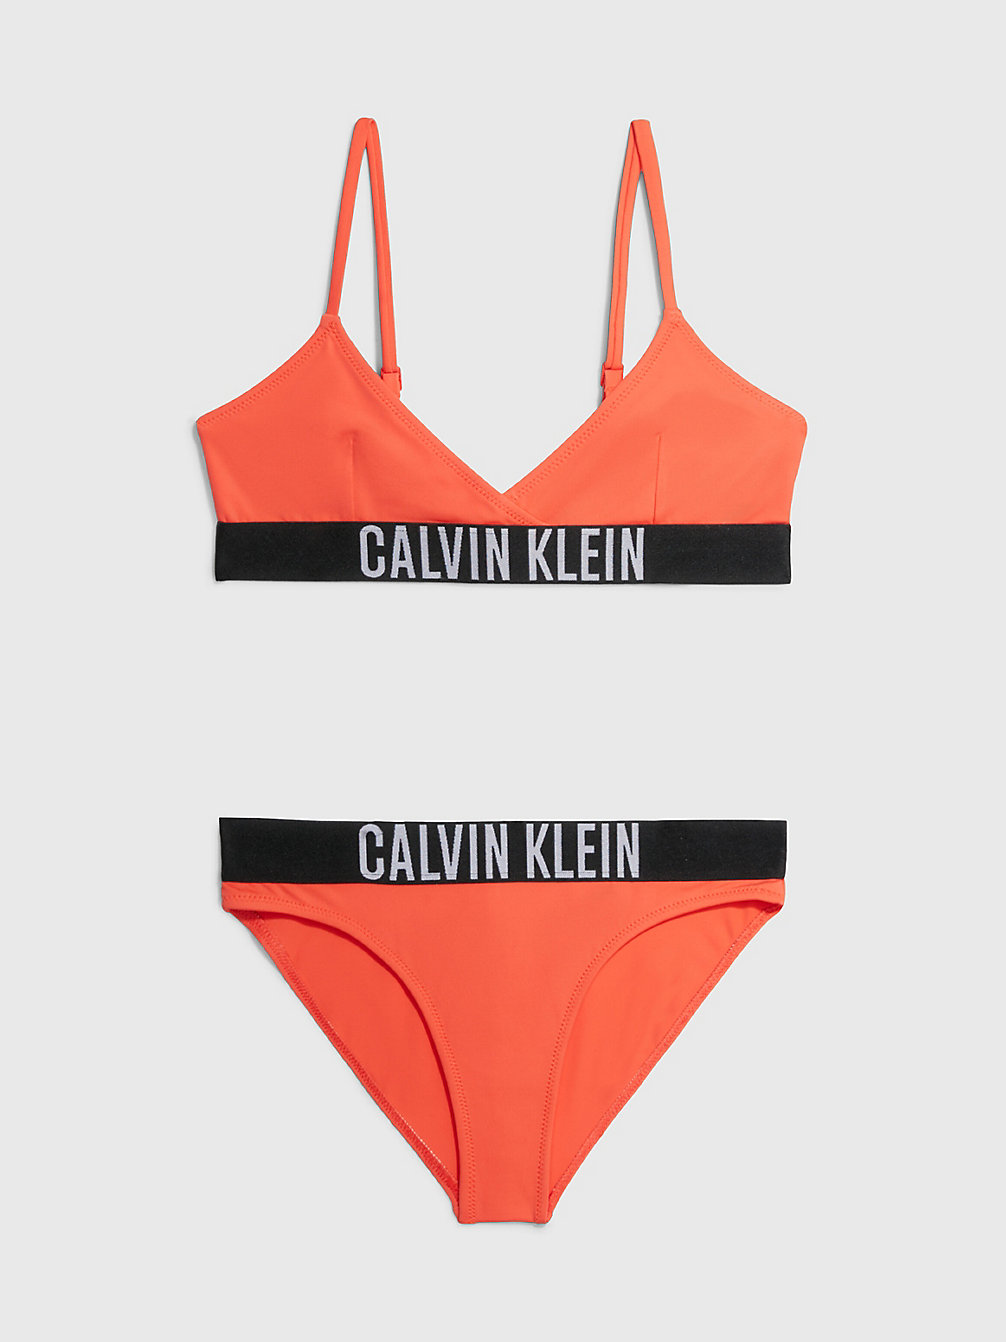 BRIGHT VERMILLION > Dziewczęcy Strój Kąpielowy Bikini Z Trójkątnymi Miseczkami - Intense Power > undefined girls - Calvin Klein